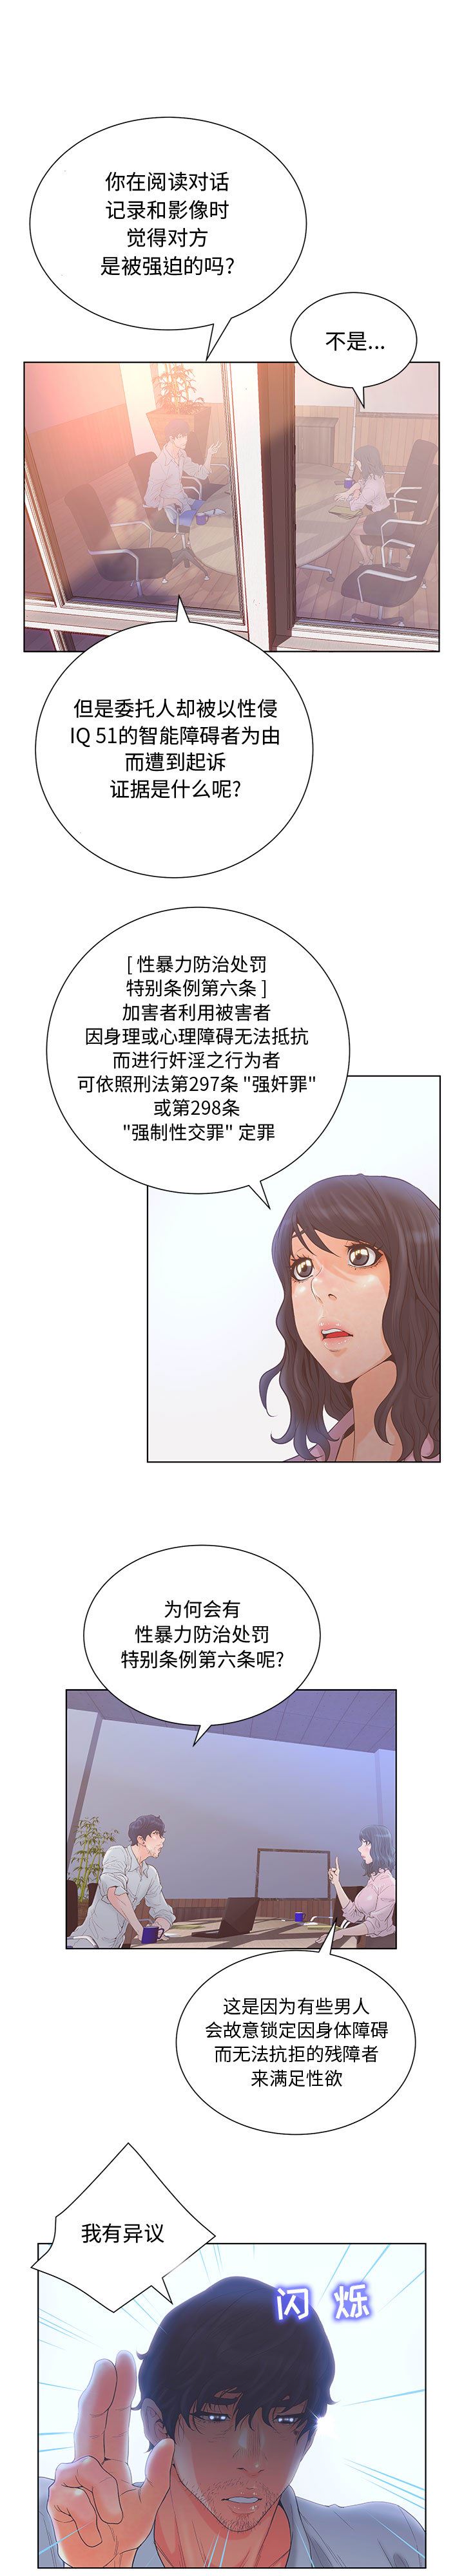 韩国污漫画 誣告 3 10